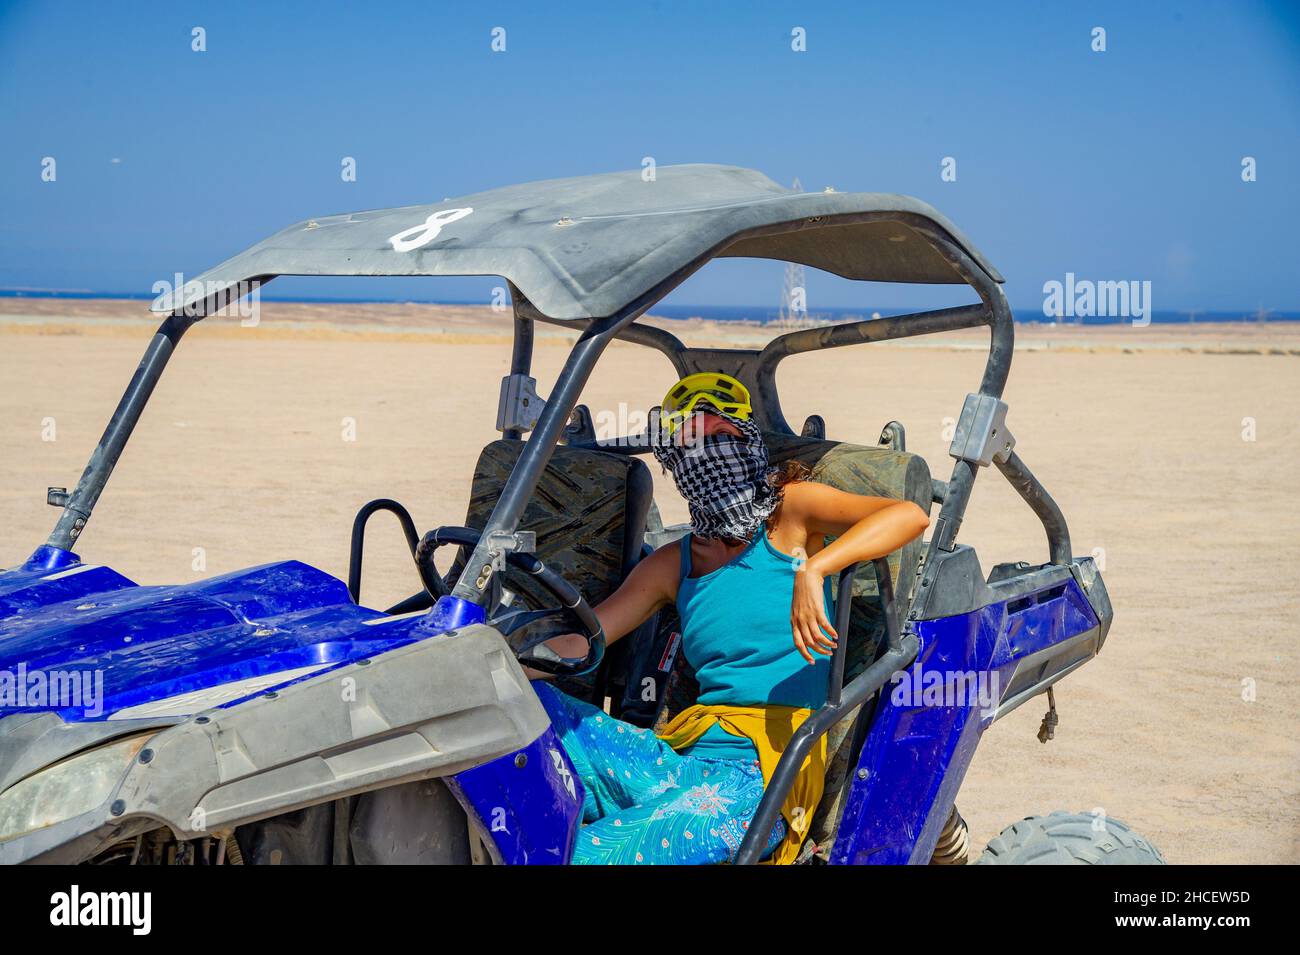 VTT touristes en egypte hurgada avoir du plaisir avant le soleil descend sur le sable chaud Banque D'Images